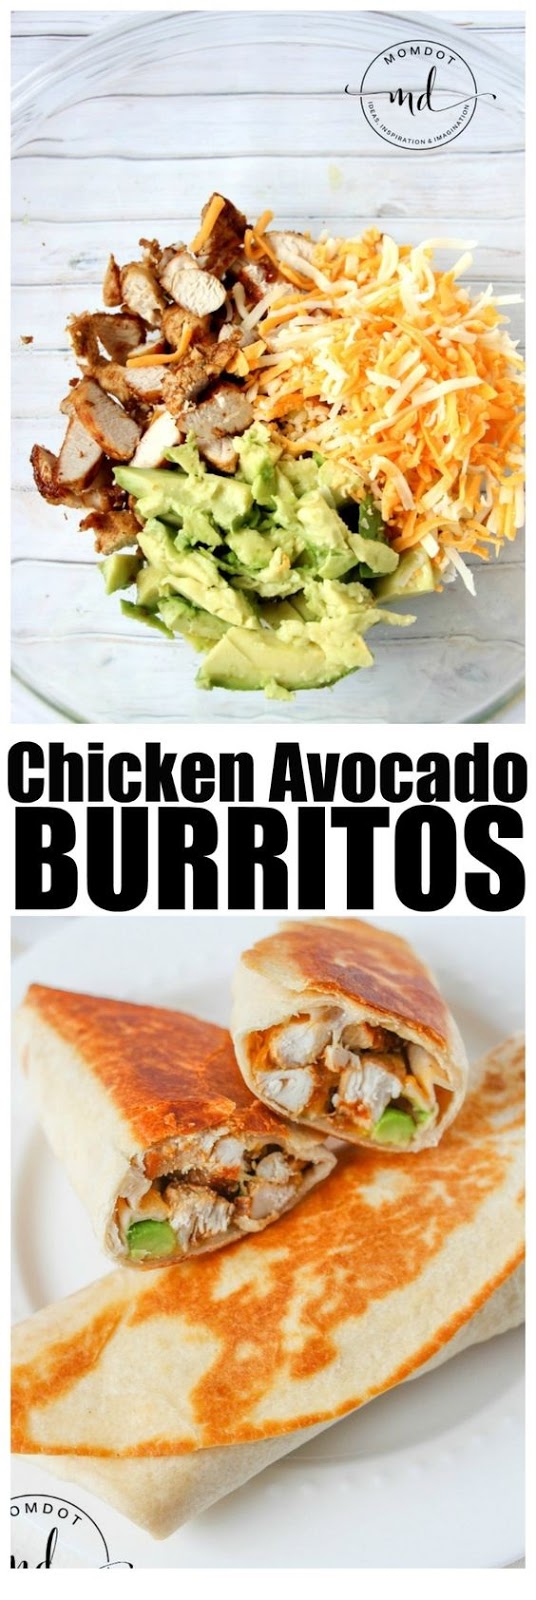 Chicken Avocado Burrito Recipe | Alan's Dream